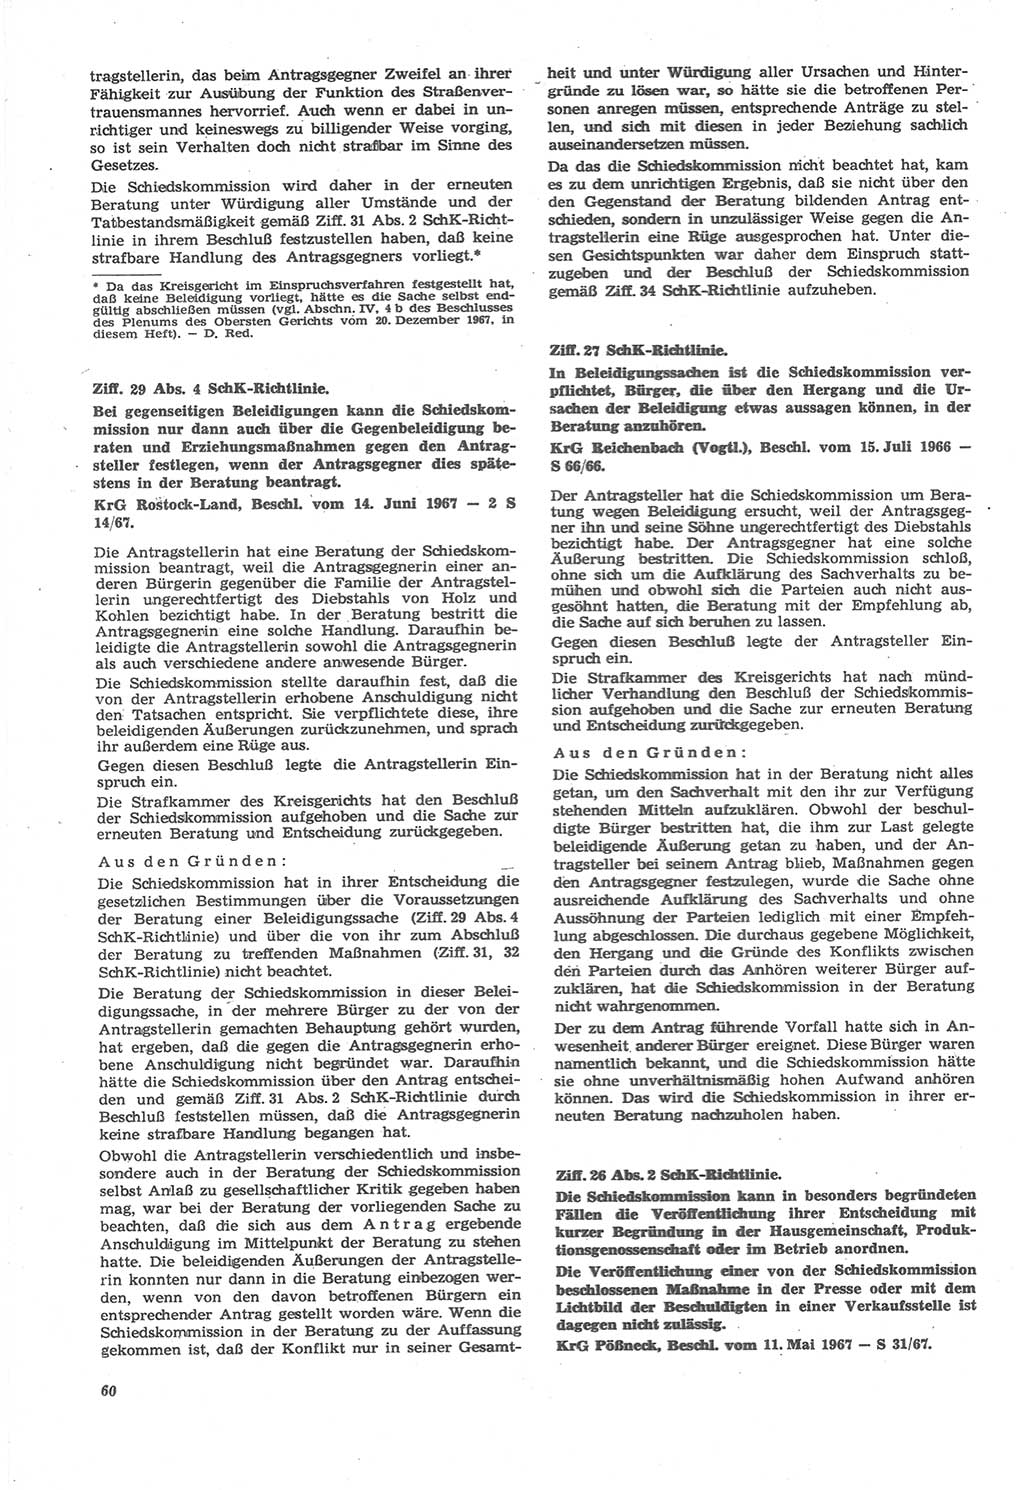 Neue Justiz (NJ), Zeitschrift für Recht und Rechtswissenschaft [Deutsche Demokratische Republik (DDR)], 22. Jahrgang 1968, Seite 60 (NJ DDR 1968, S. 60)